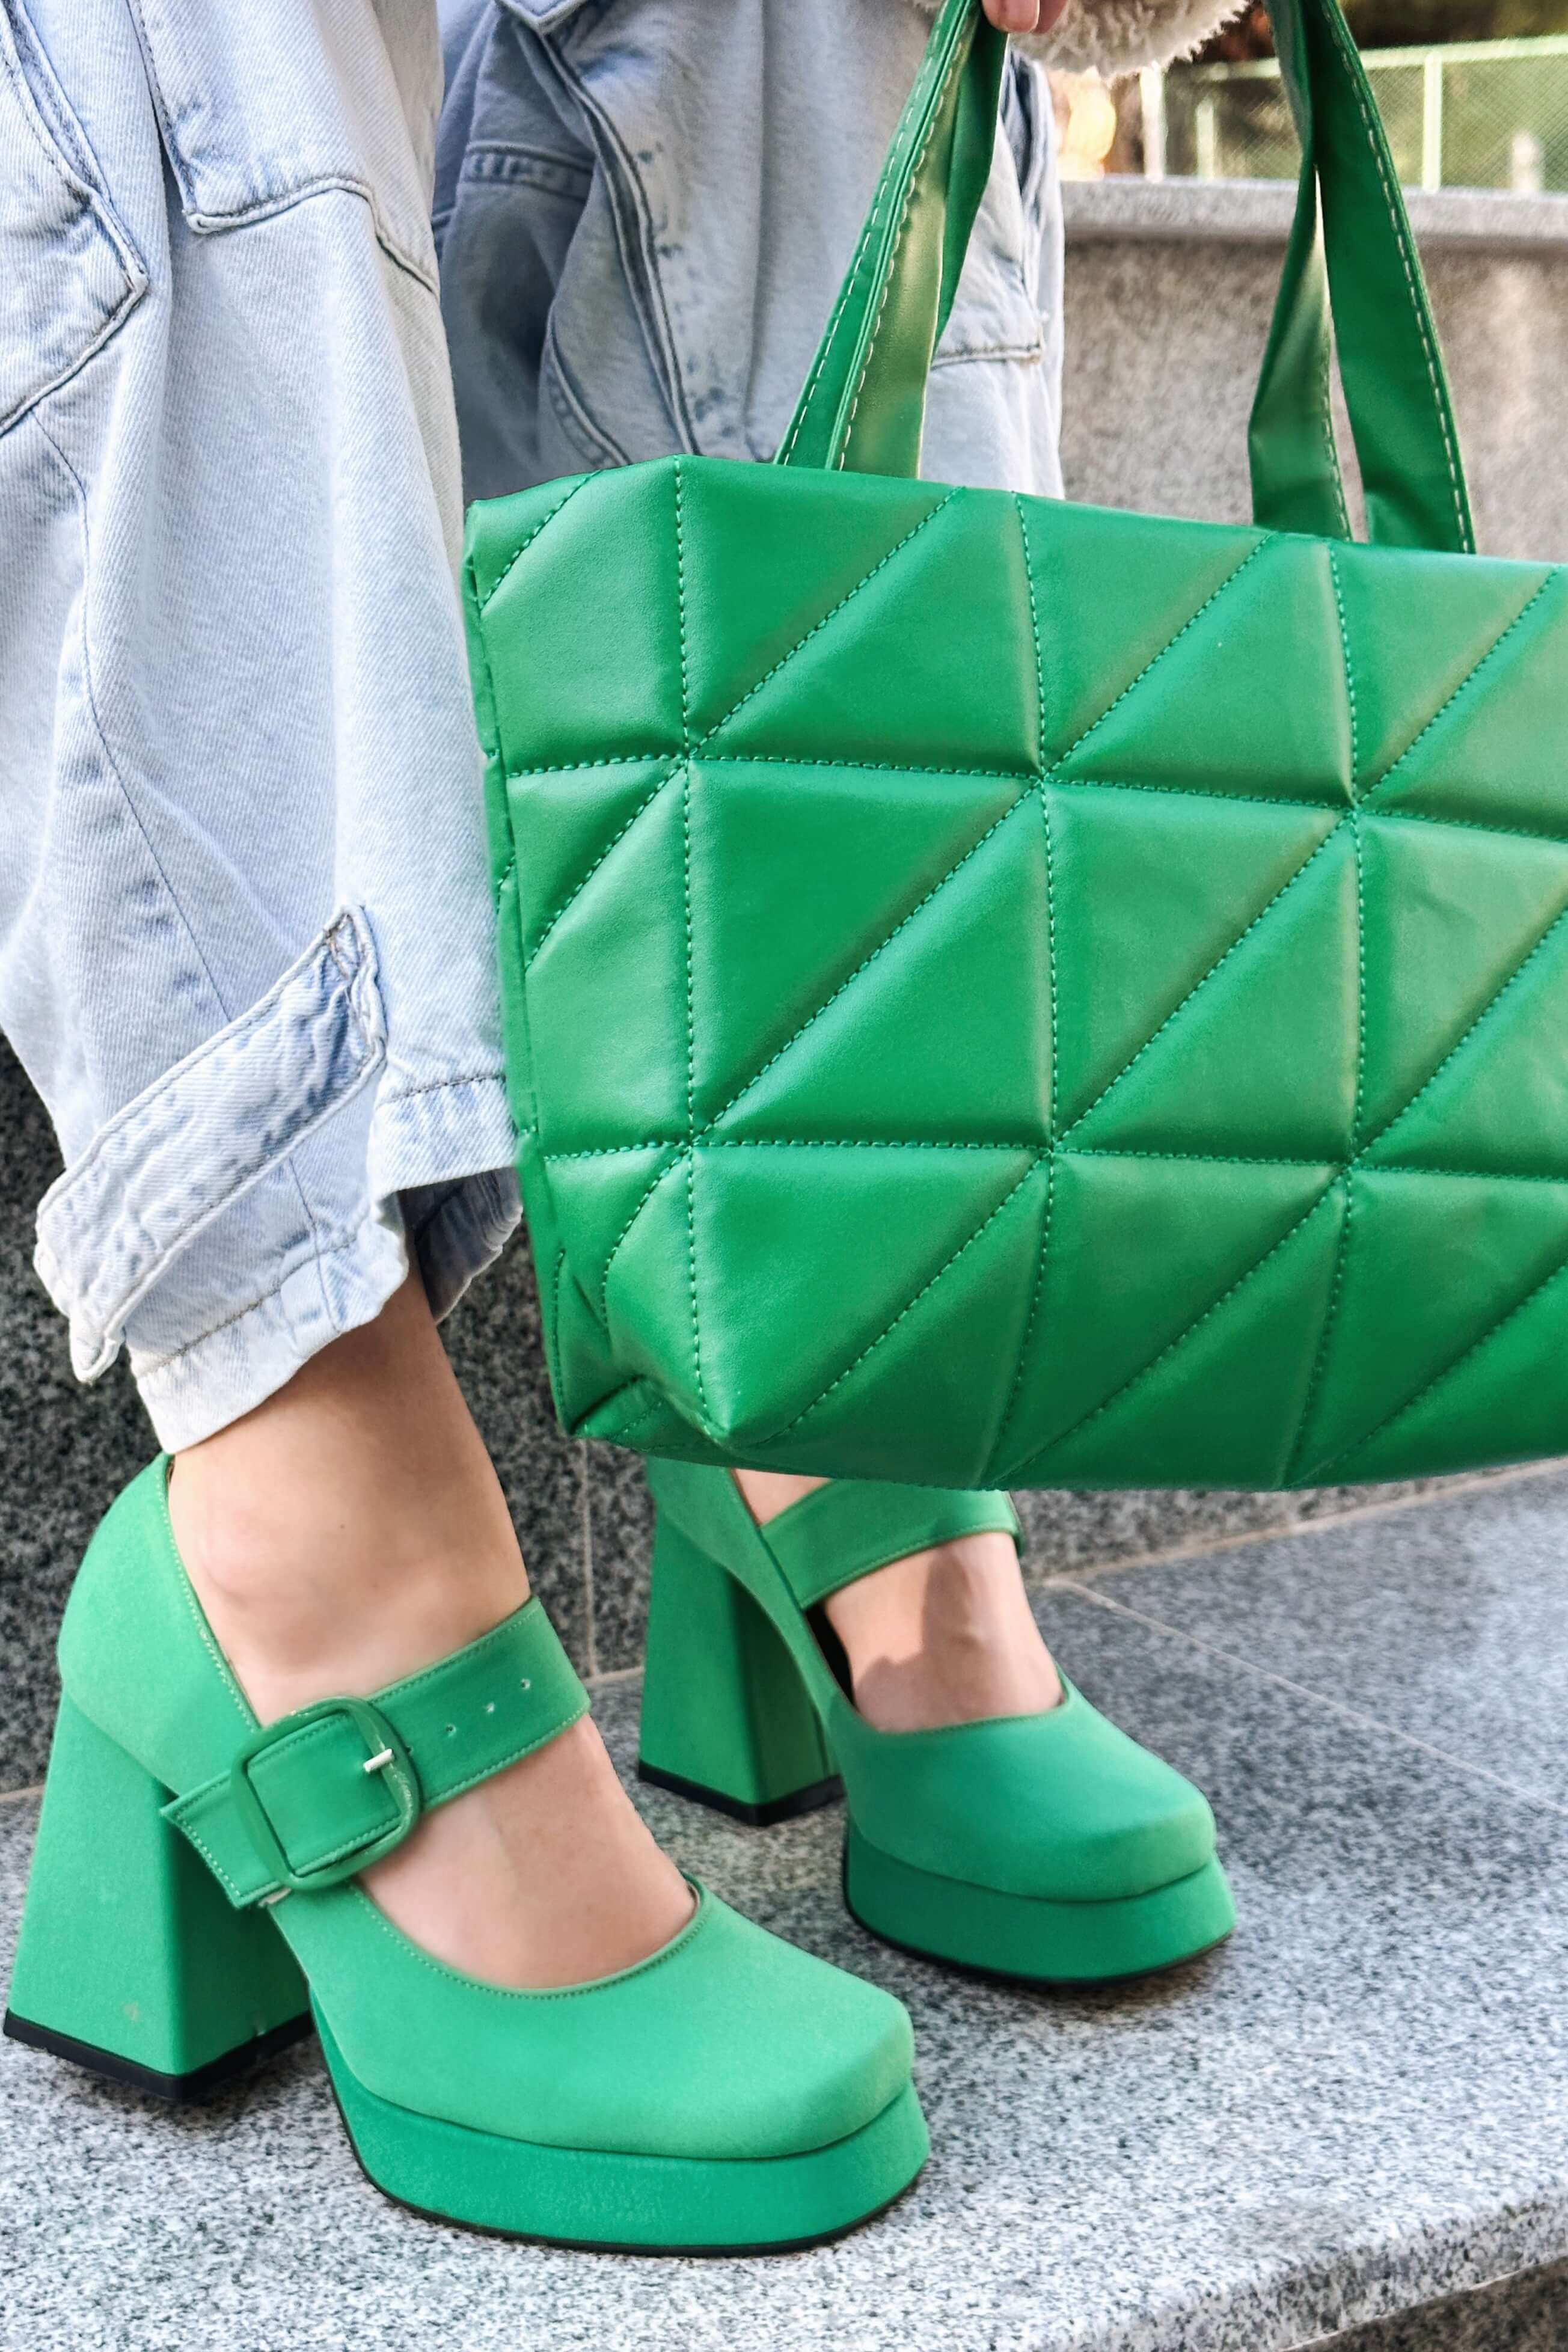 Alpons Saten Kadın Platform Topuklu Ayakkabı Yeşil